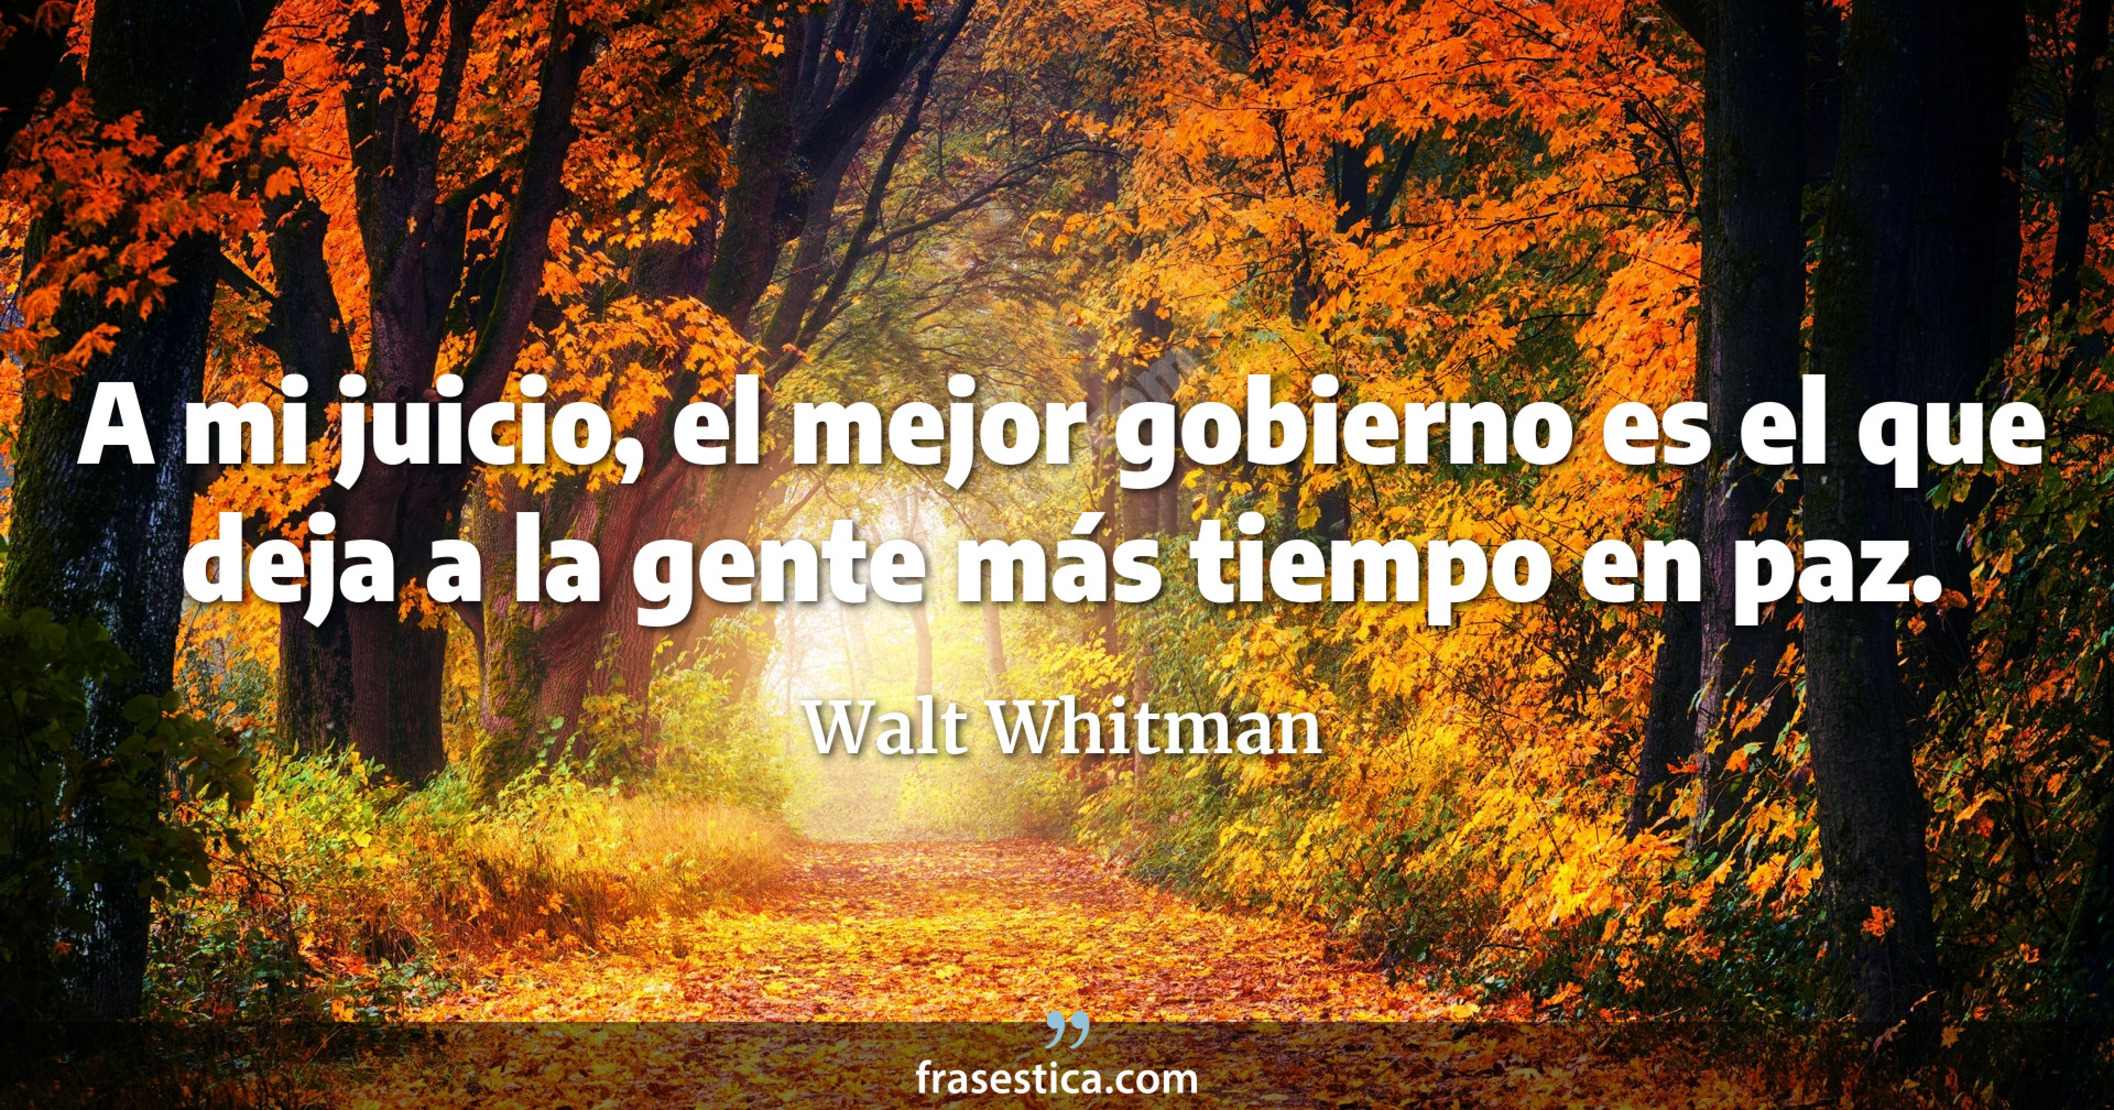 A mi juicio, el mejor gobierno es el que deja a la gente más tiempo en paz. - Walt Whitman